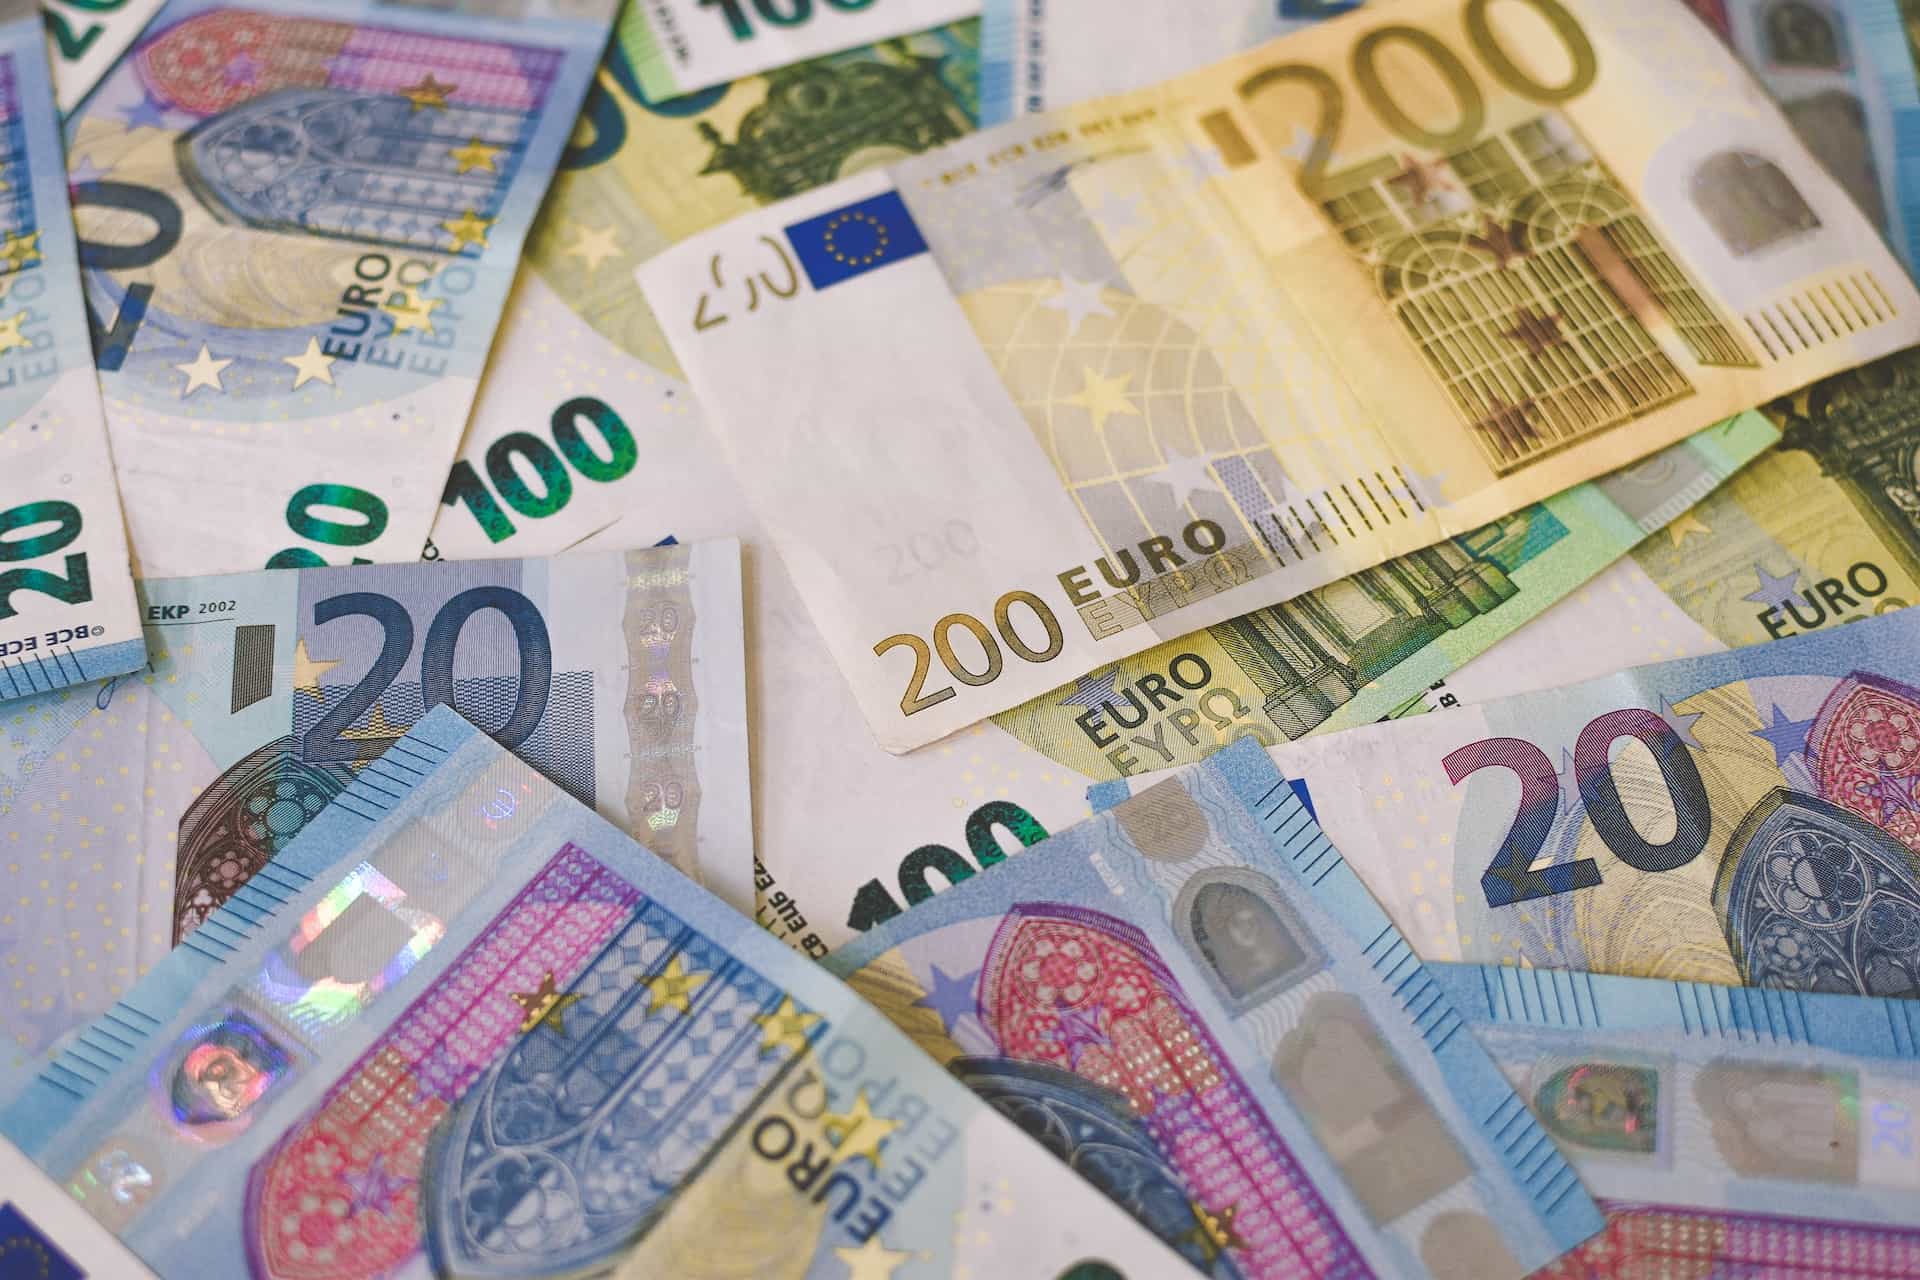 Setumpuk uang kertas Euro (EUR) yang terdiri dari pecahan 20, 100, dan 200 Euro.